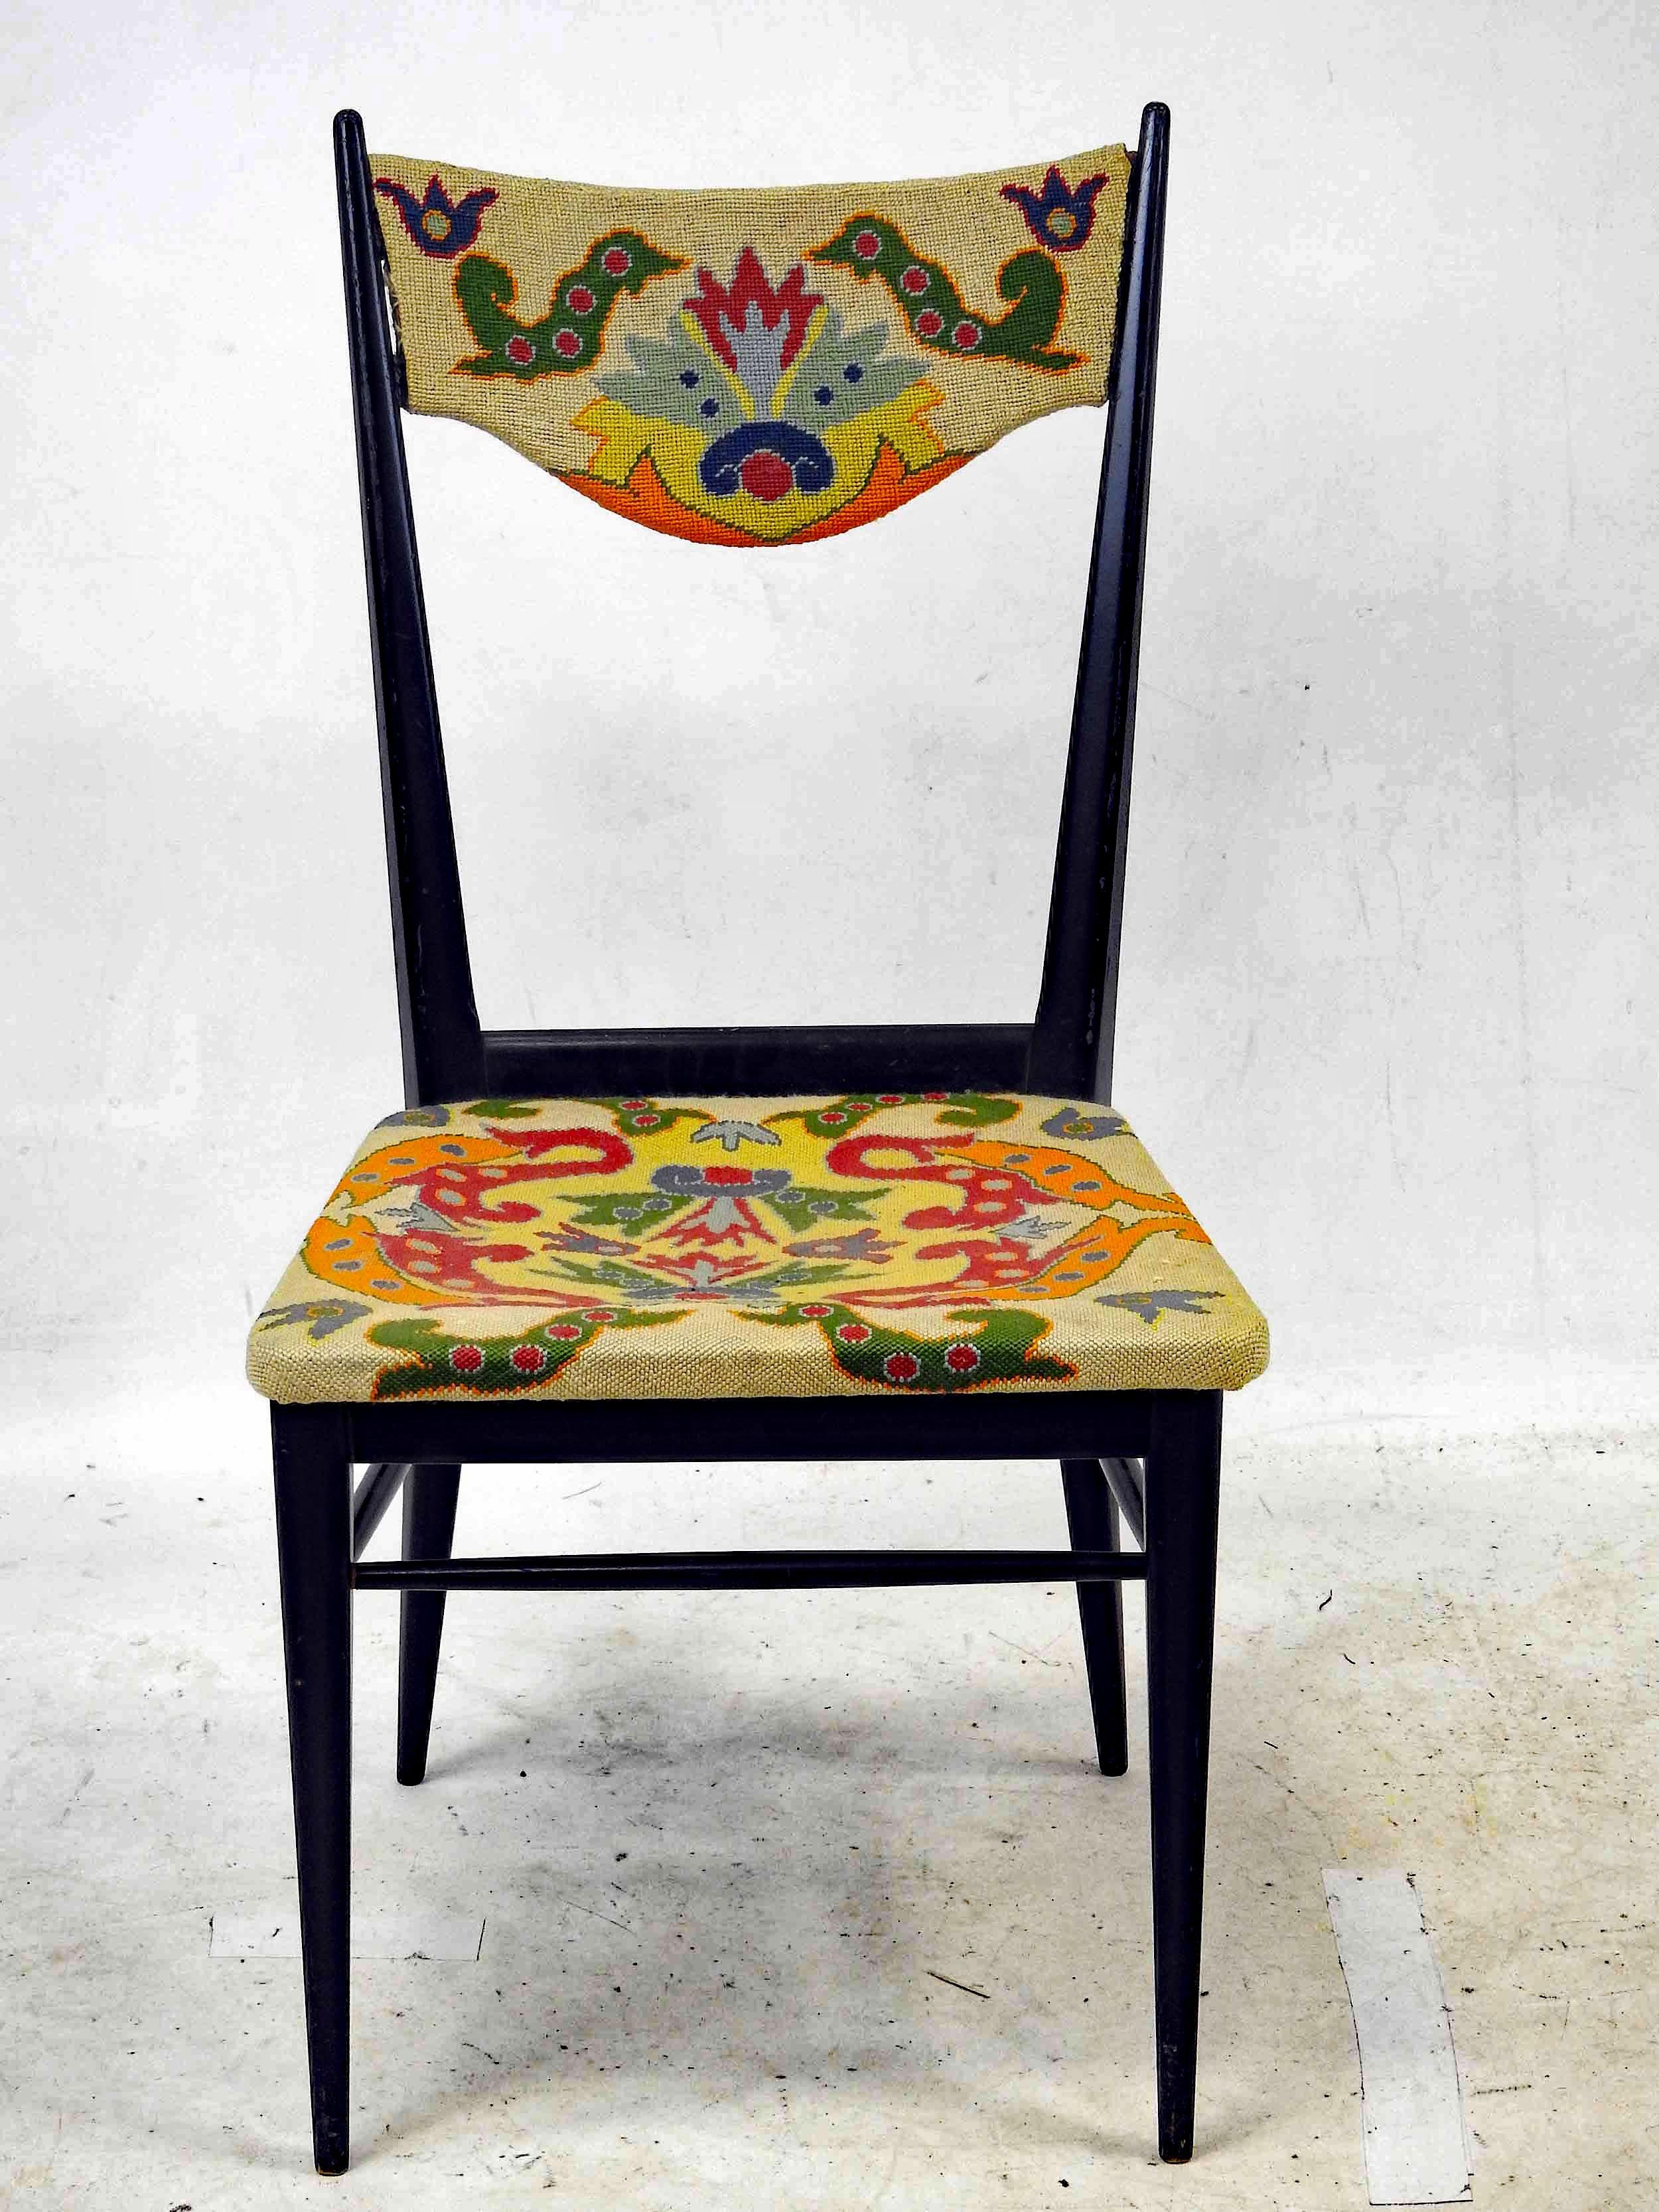 Stuhl mit Struktur aus ebonisiertem Holz, Sitz und Rückenlehne mit Petit-Point-Gobelin bezogen.
Polstermöbel in gutem Zustand